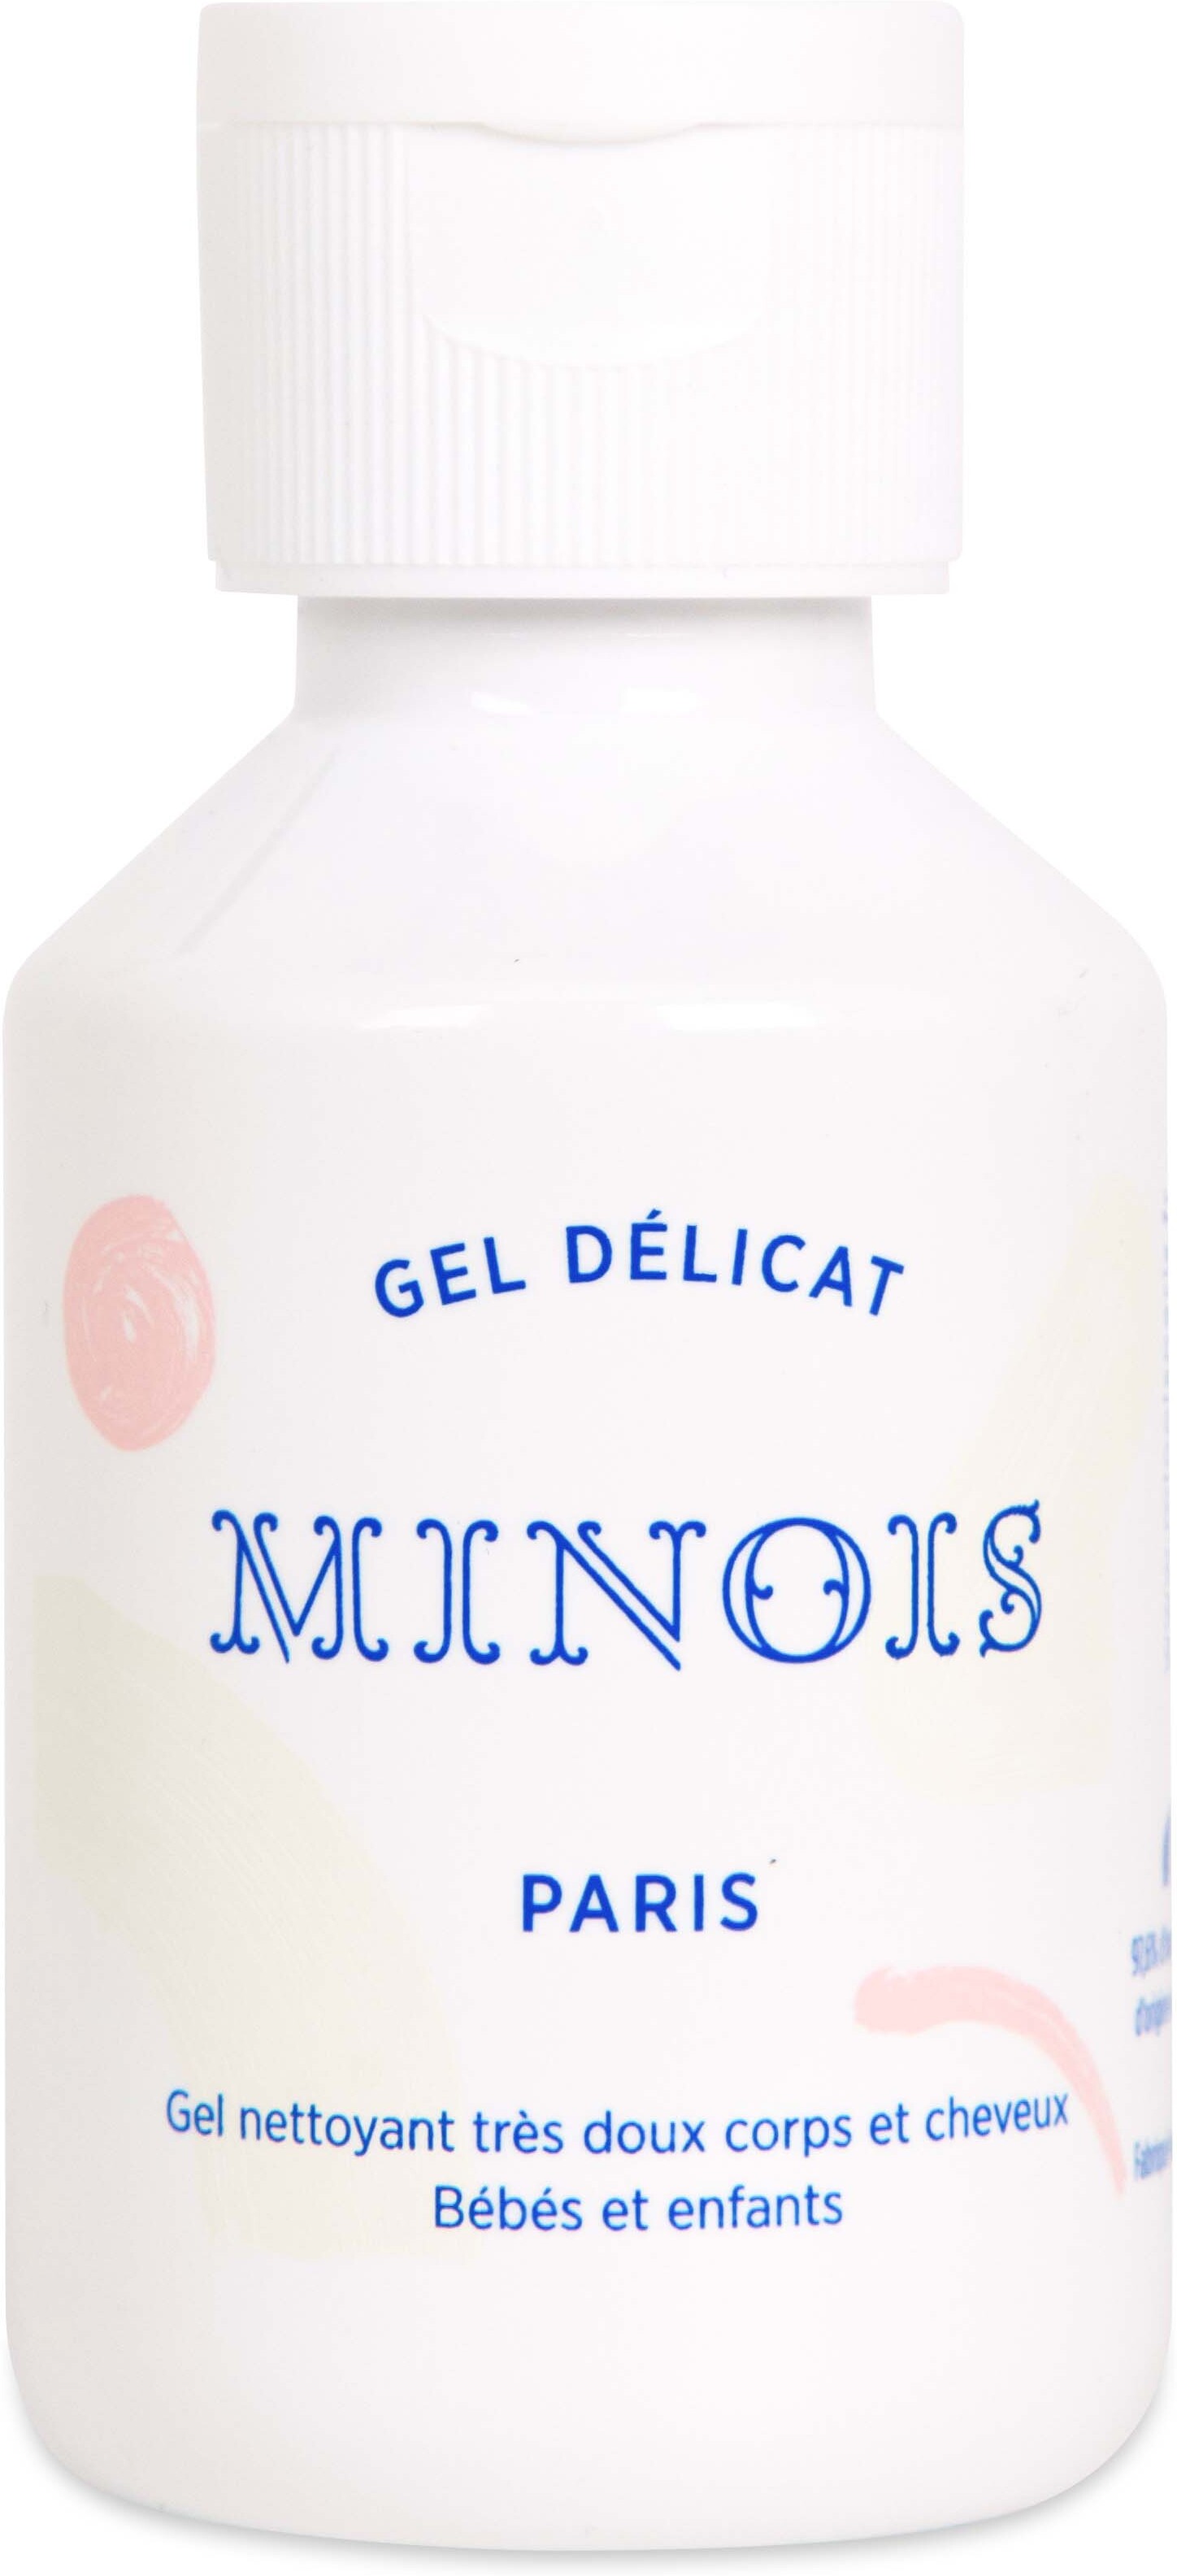 Minois Paris Delicate Gel 100 ml